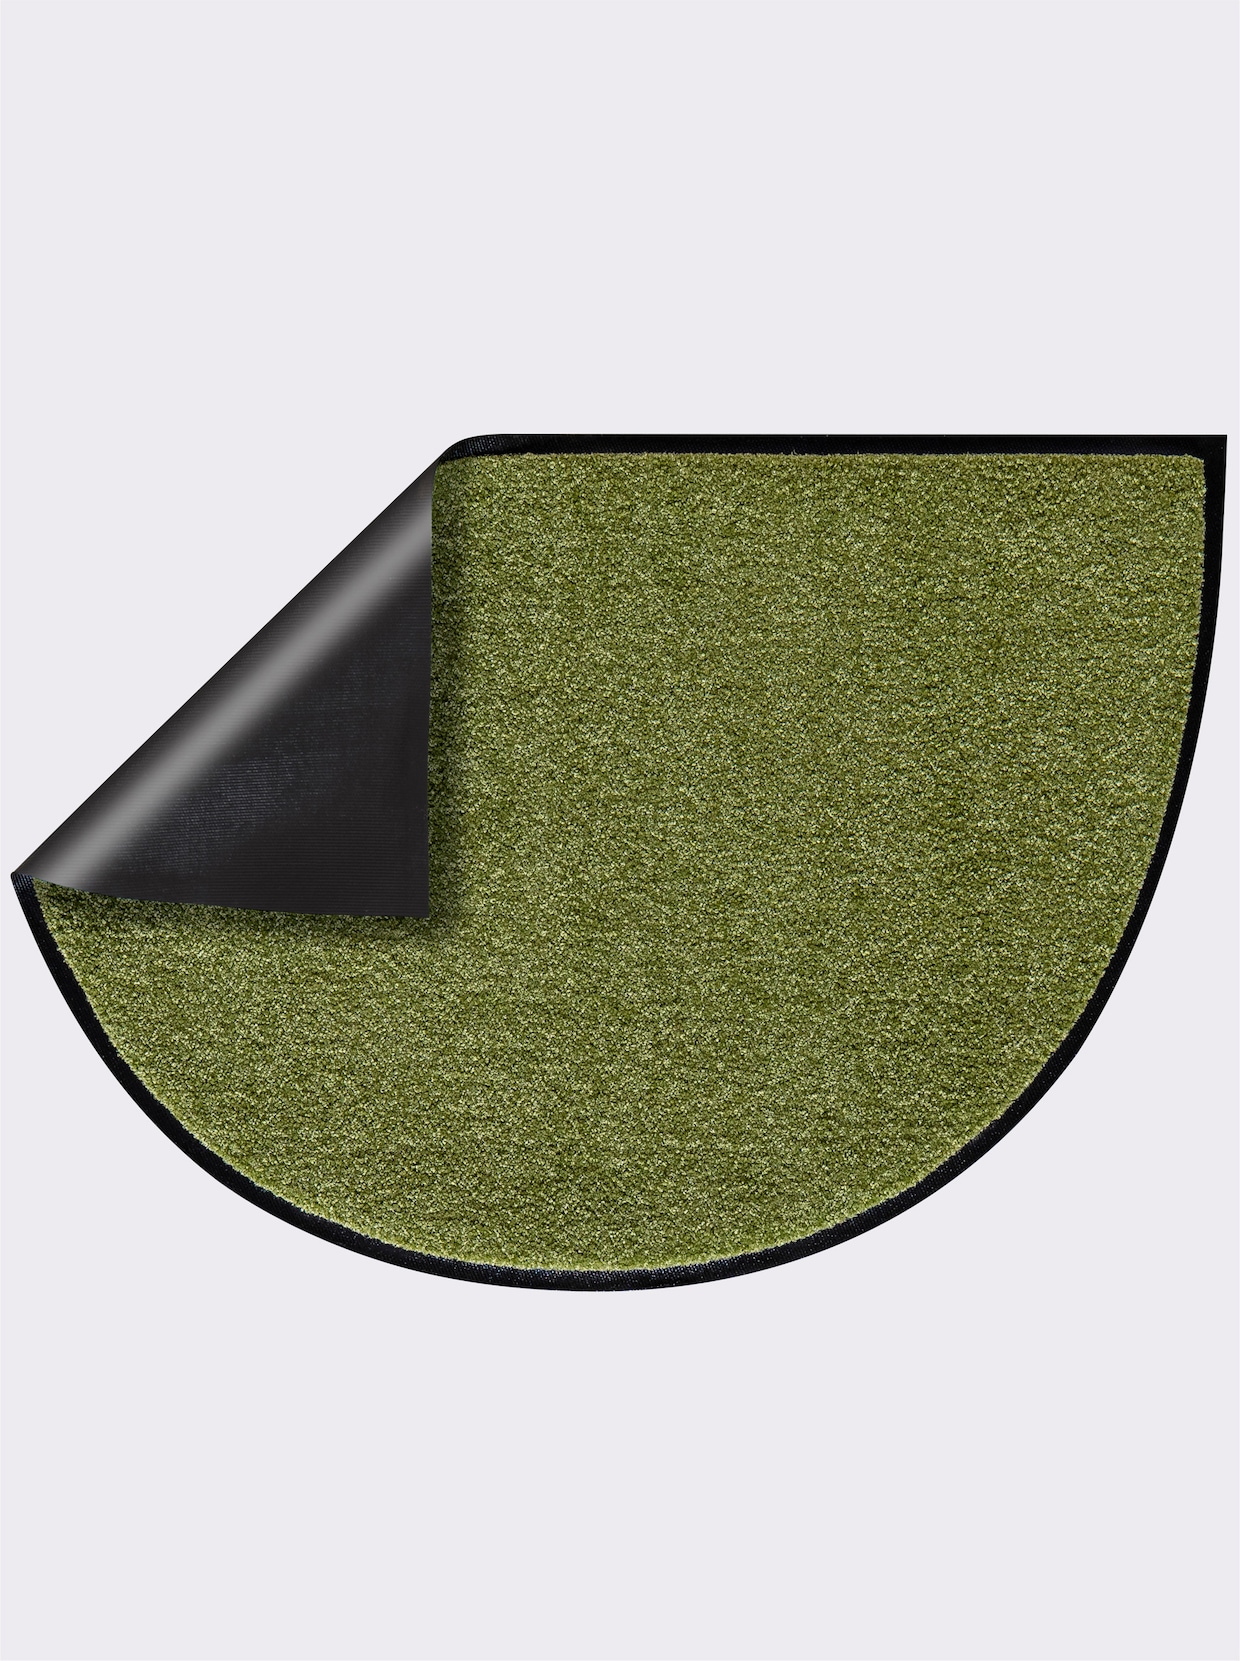 Salonloewe Fußmatte - grün